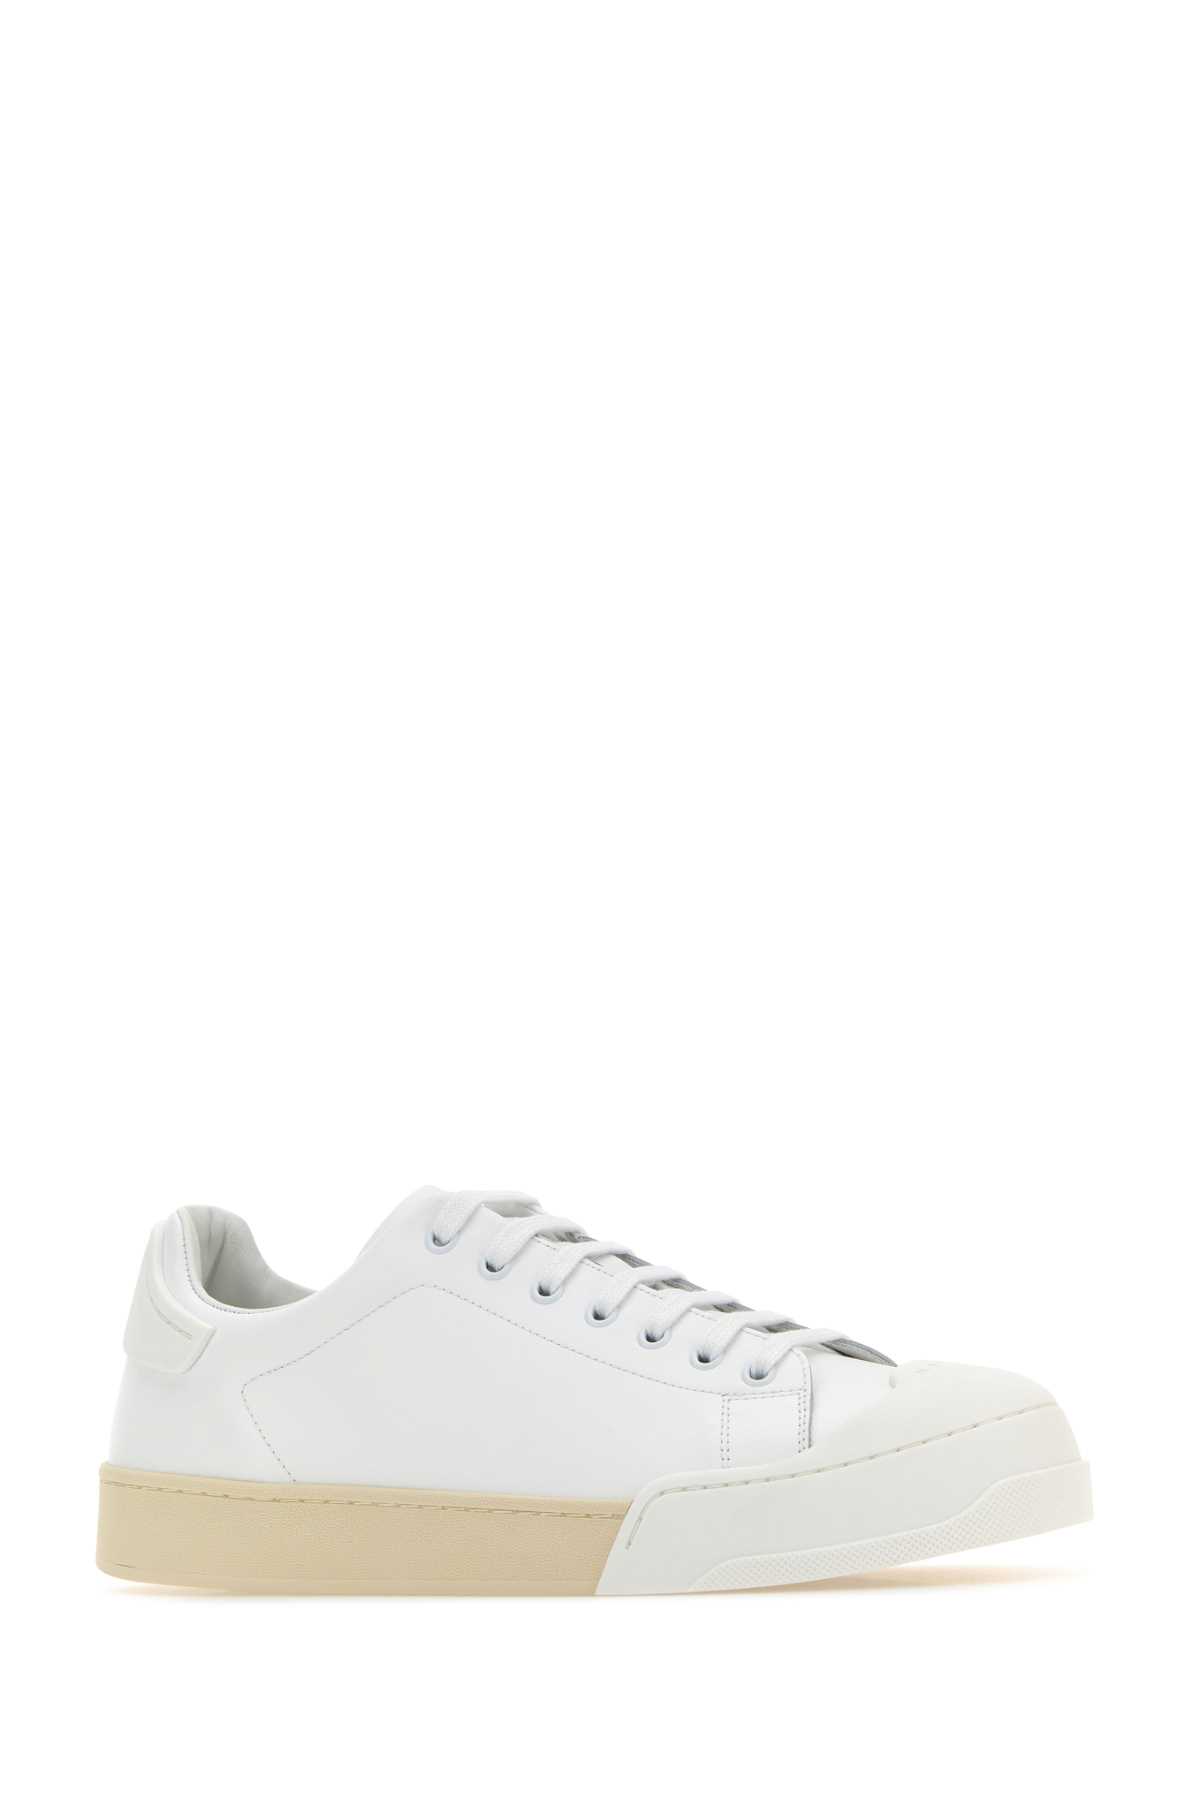 Shop Marni White Leather Dada Sneakers In Lilywhitelilywhite